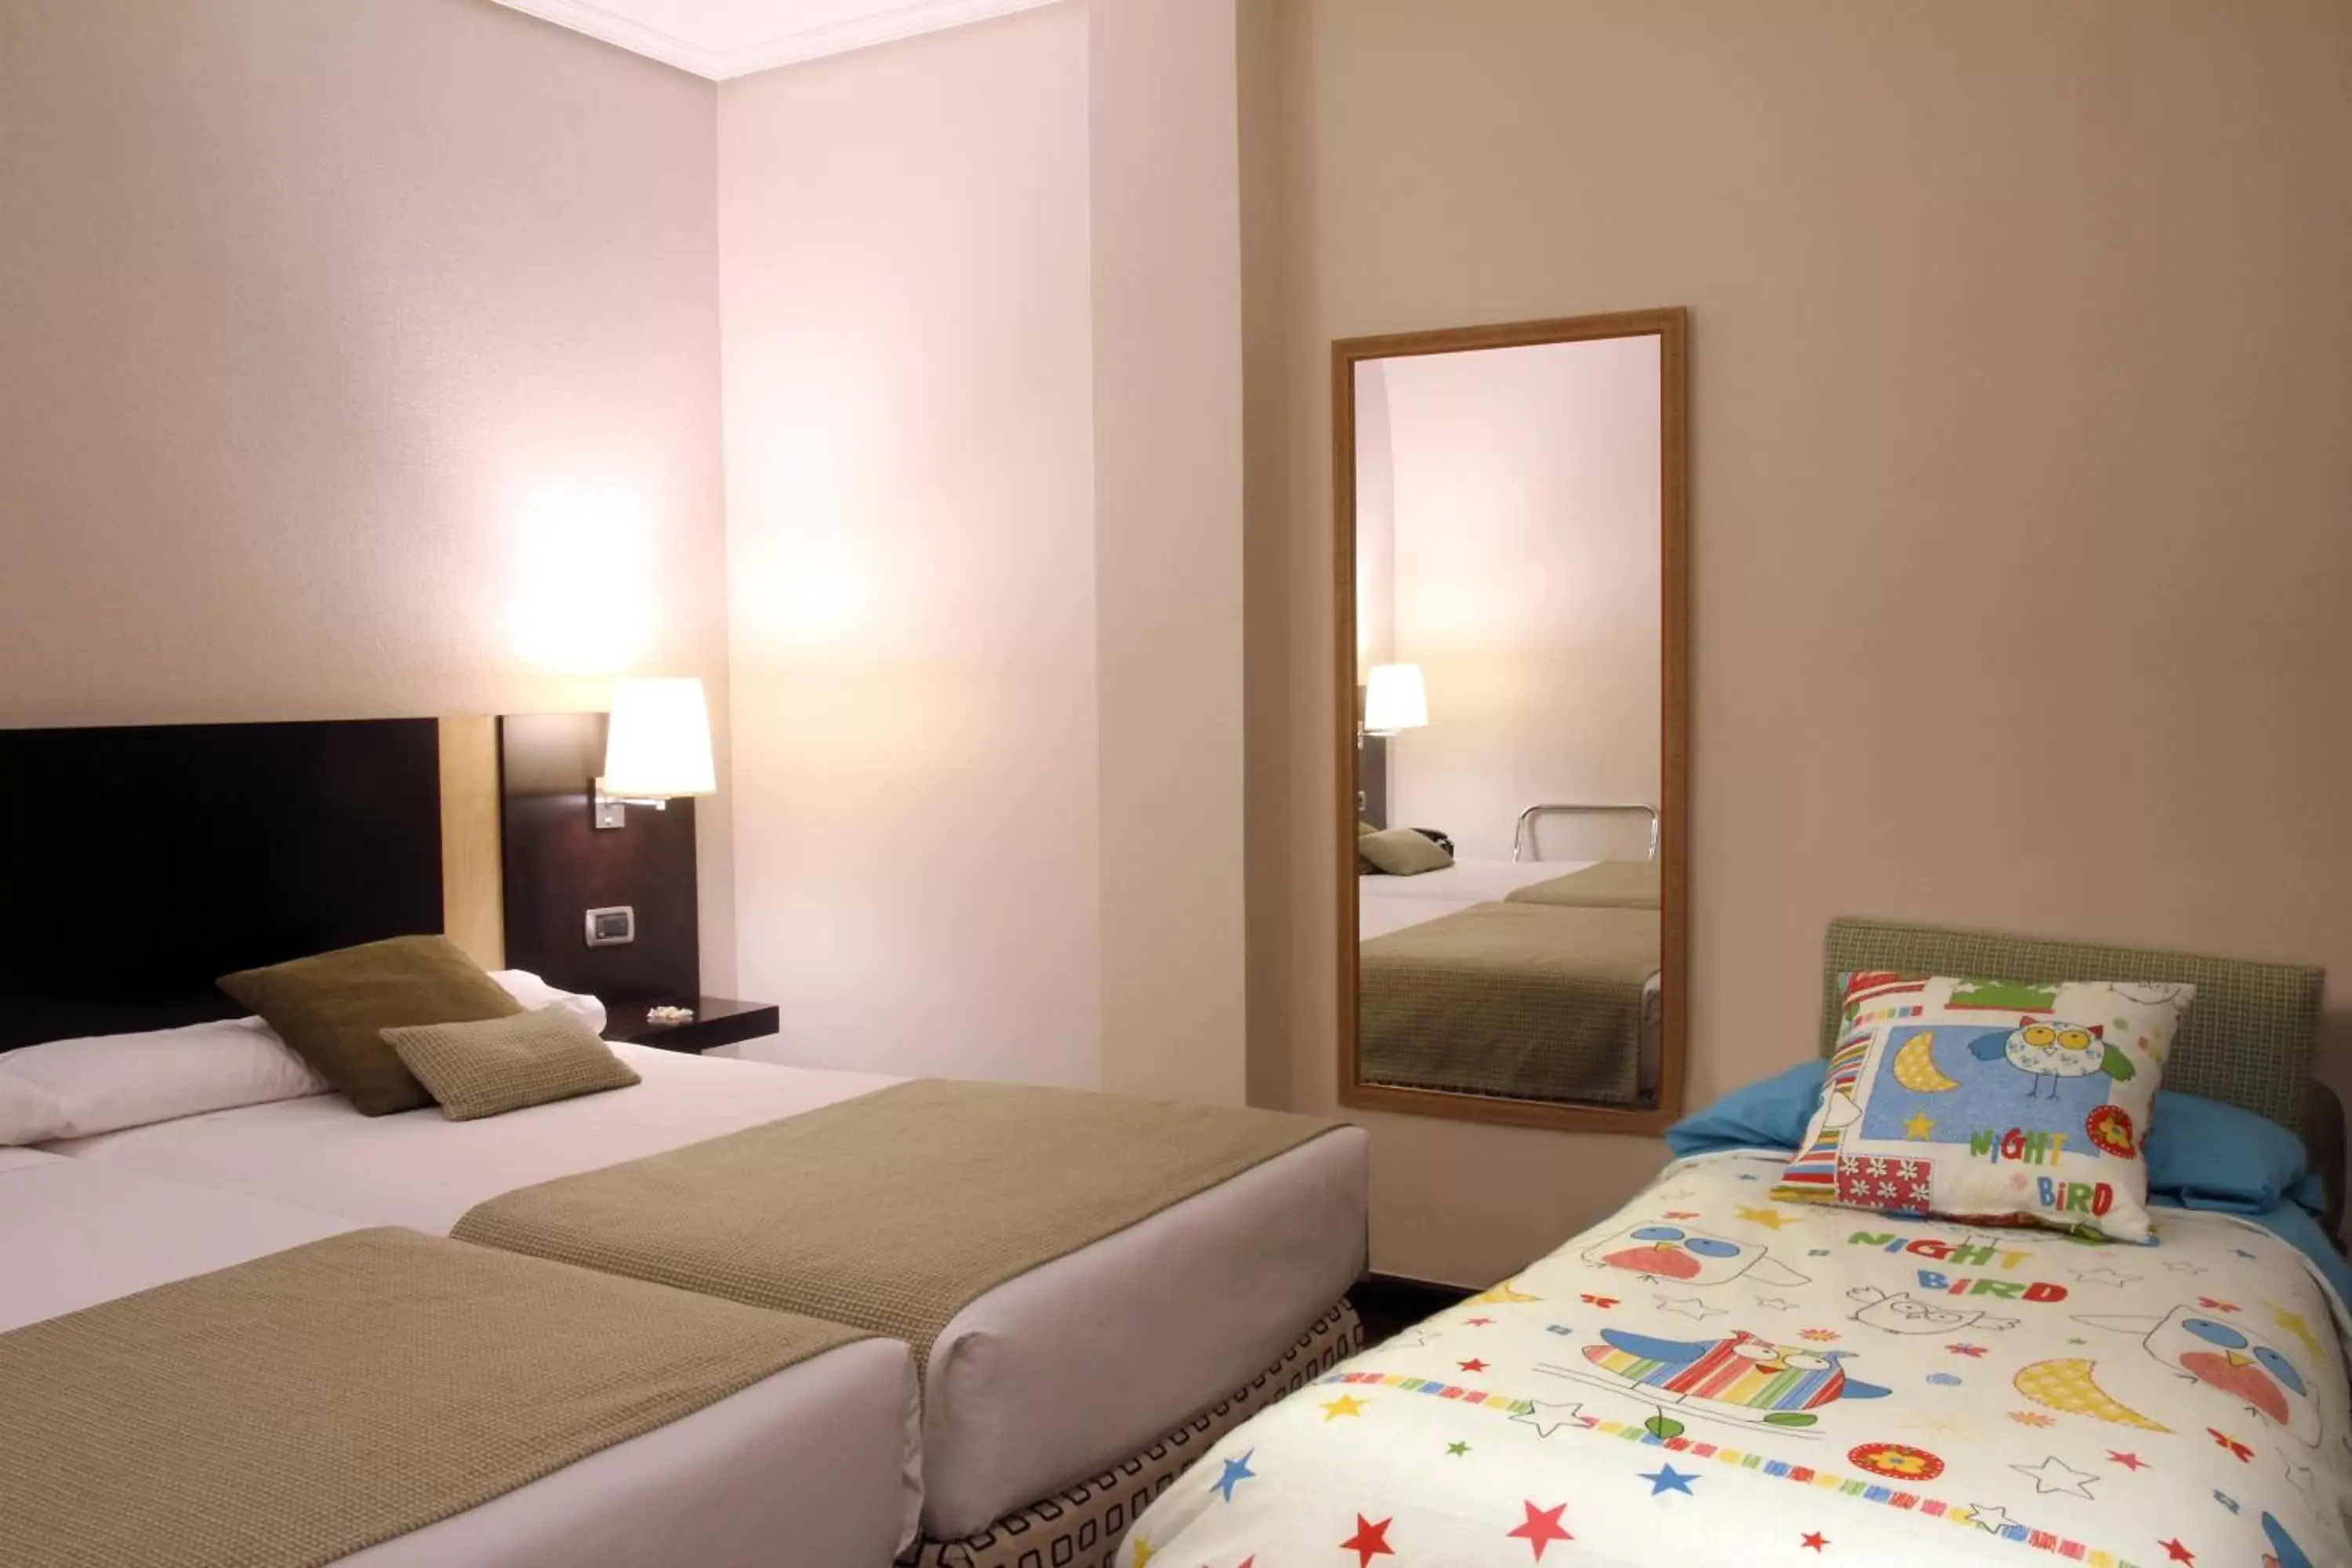 Bed in Hotel Conde Duque Bilbao